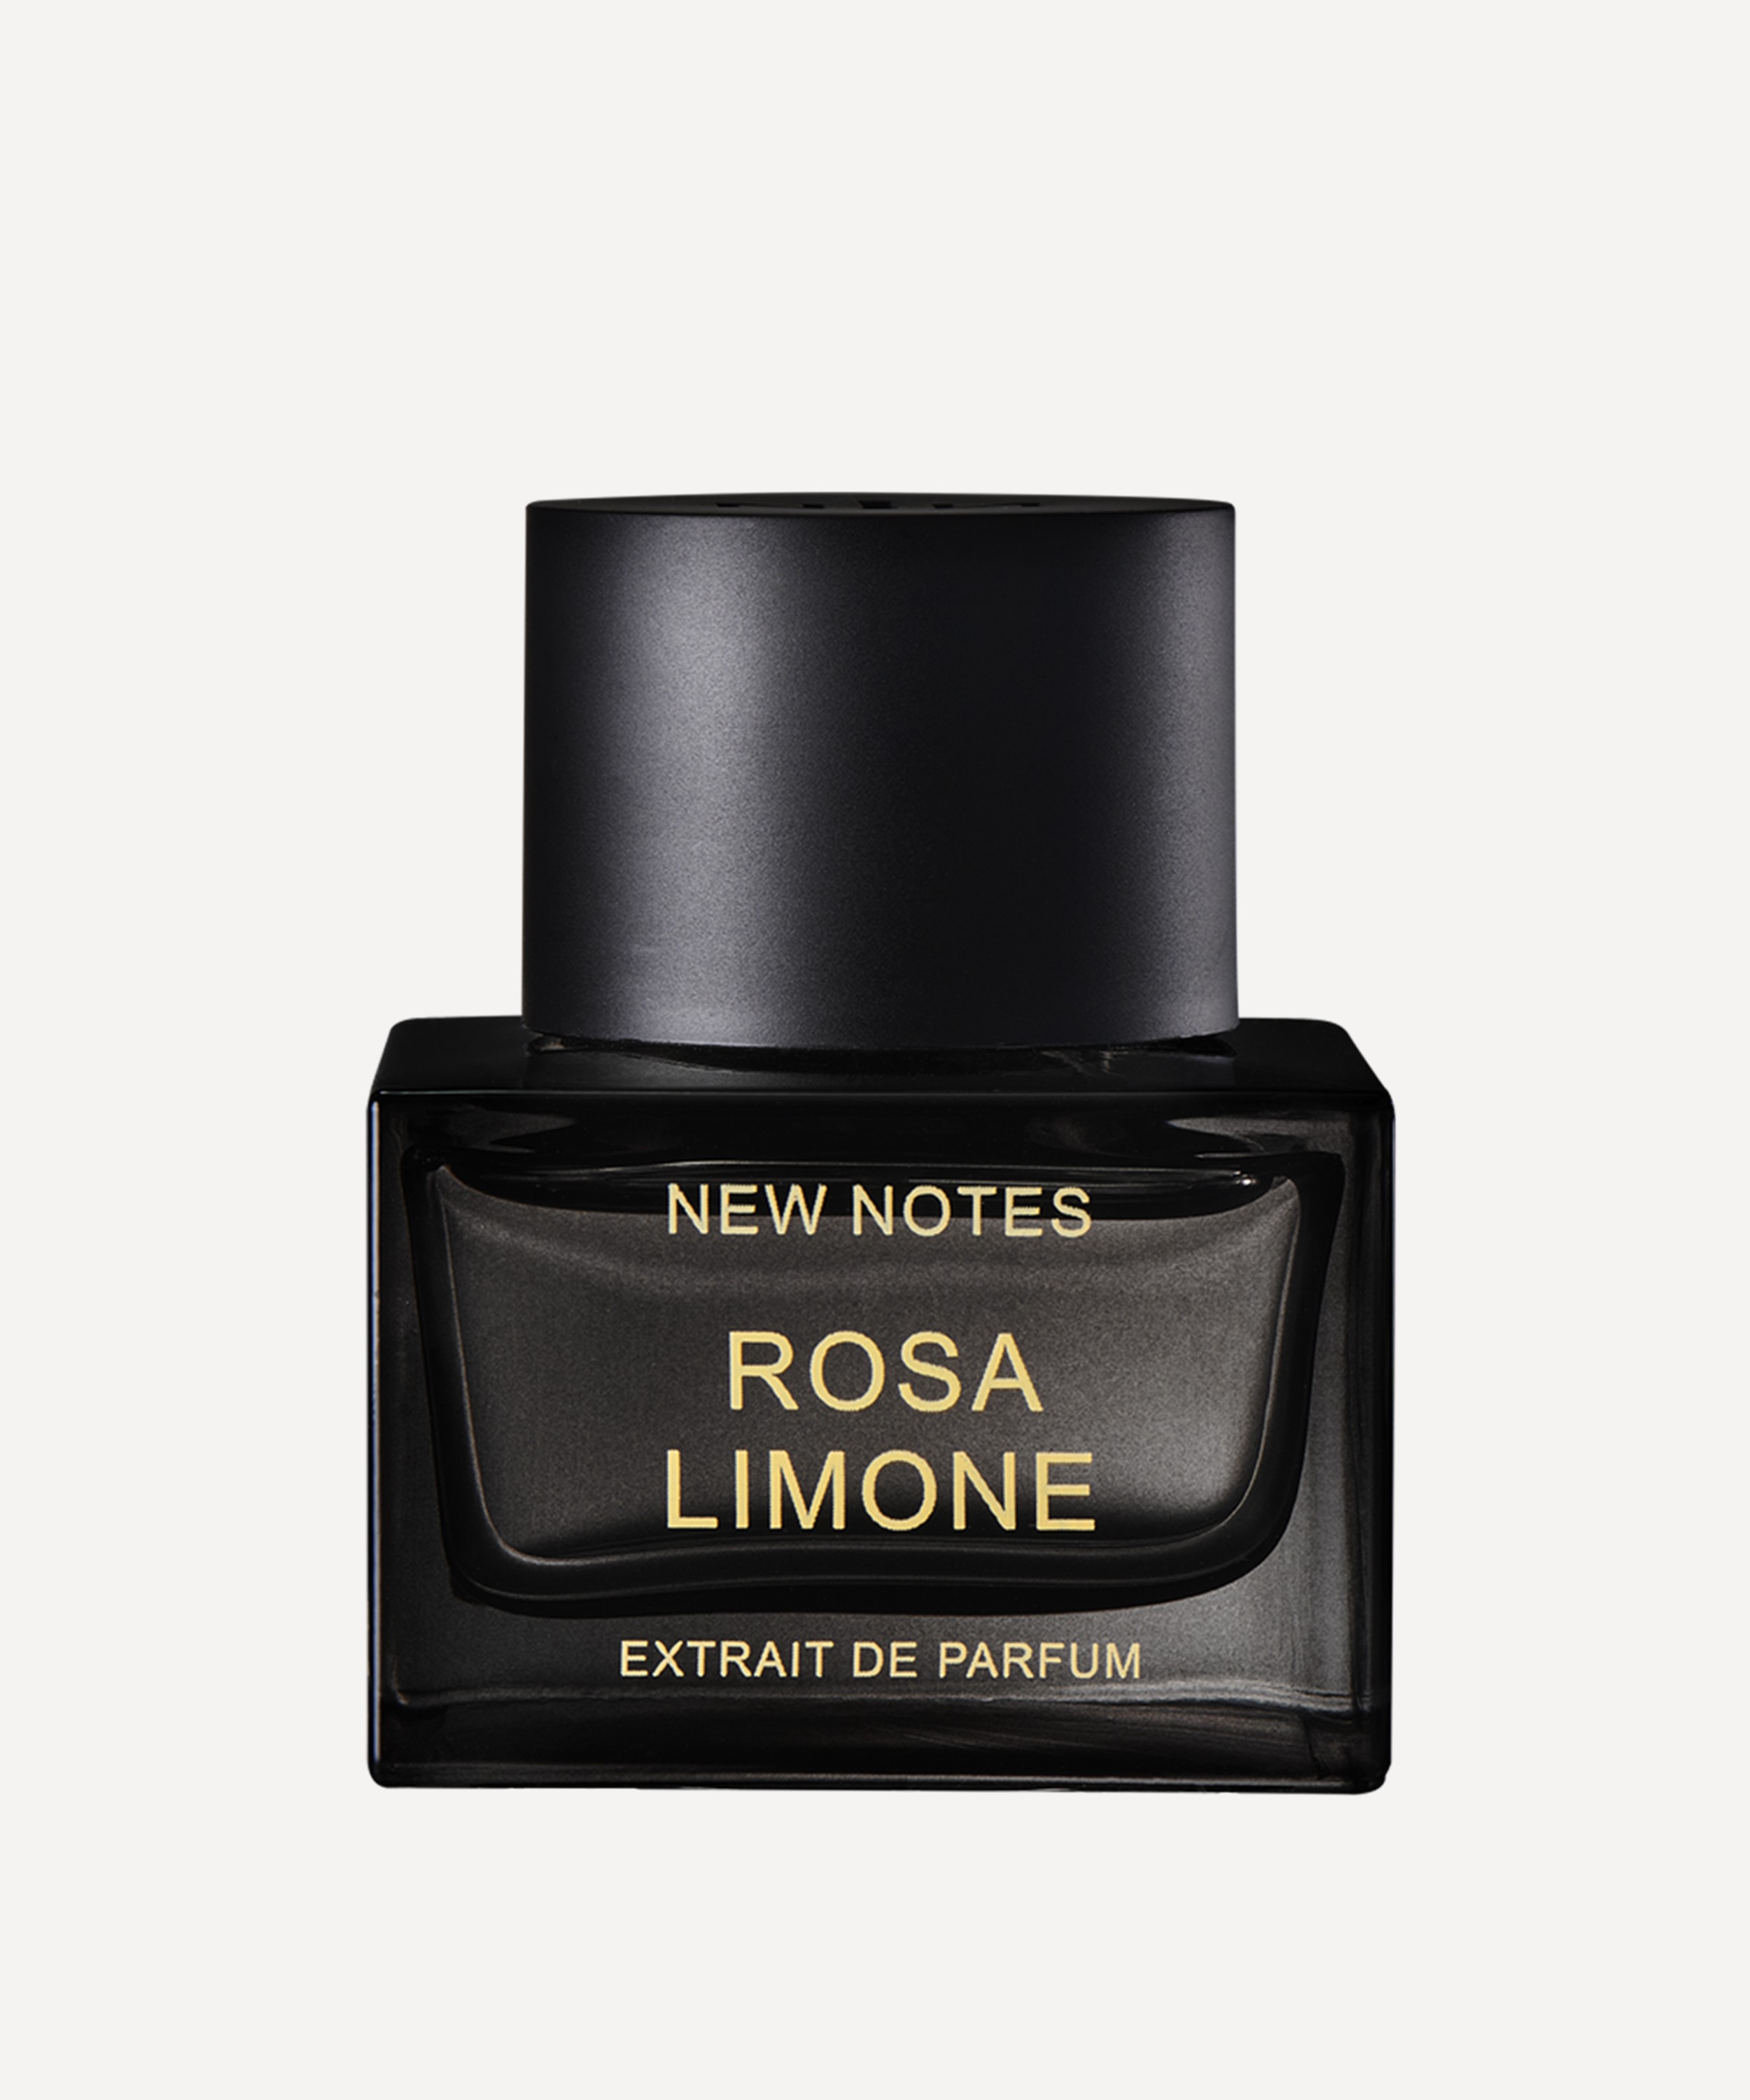 New Notes - Rosa Limone Extrait de Parfum 50ml image number 0